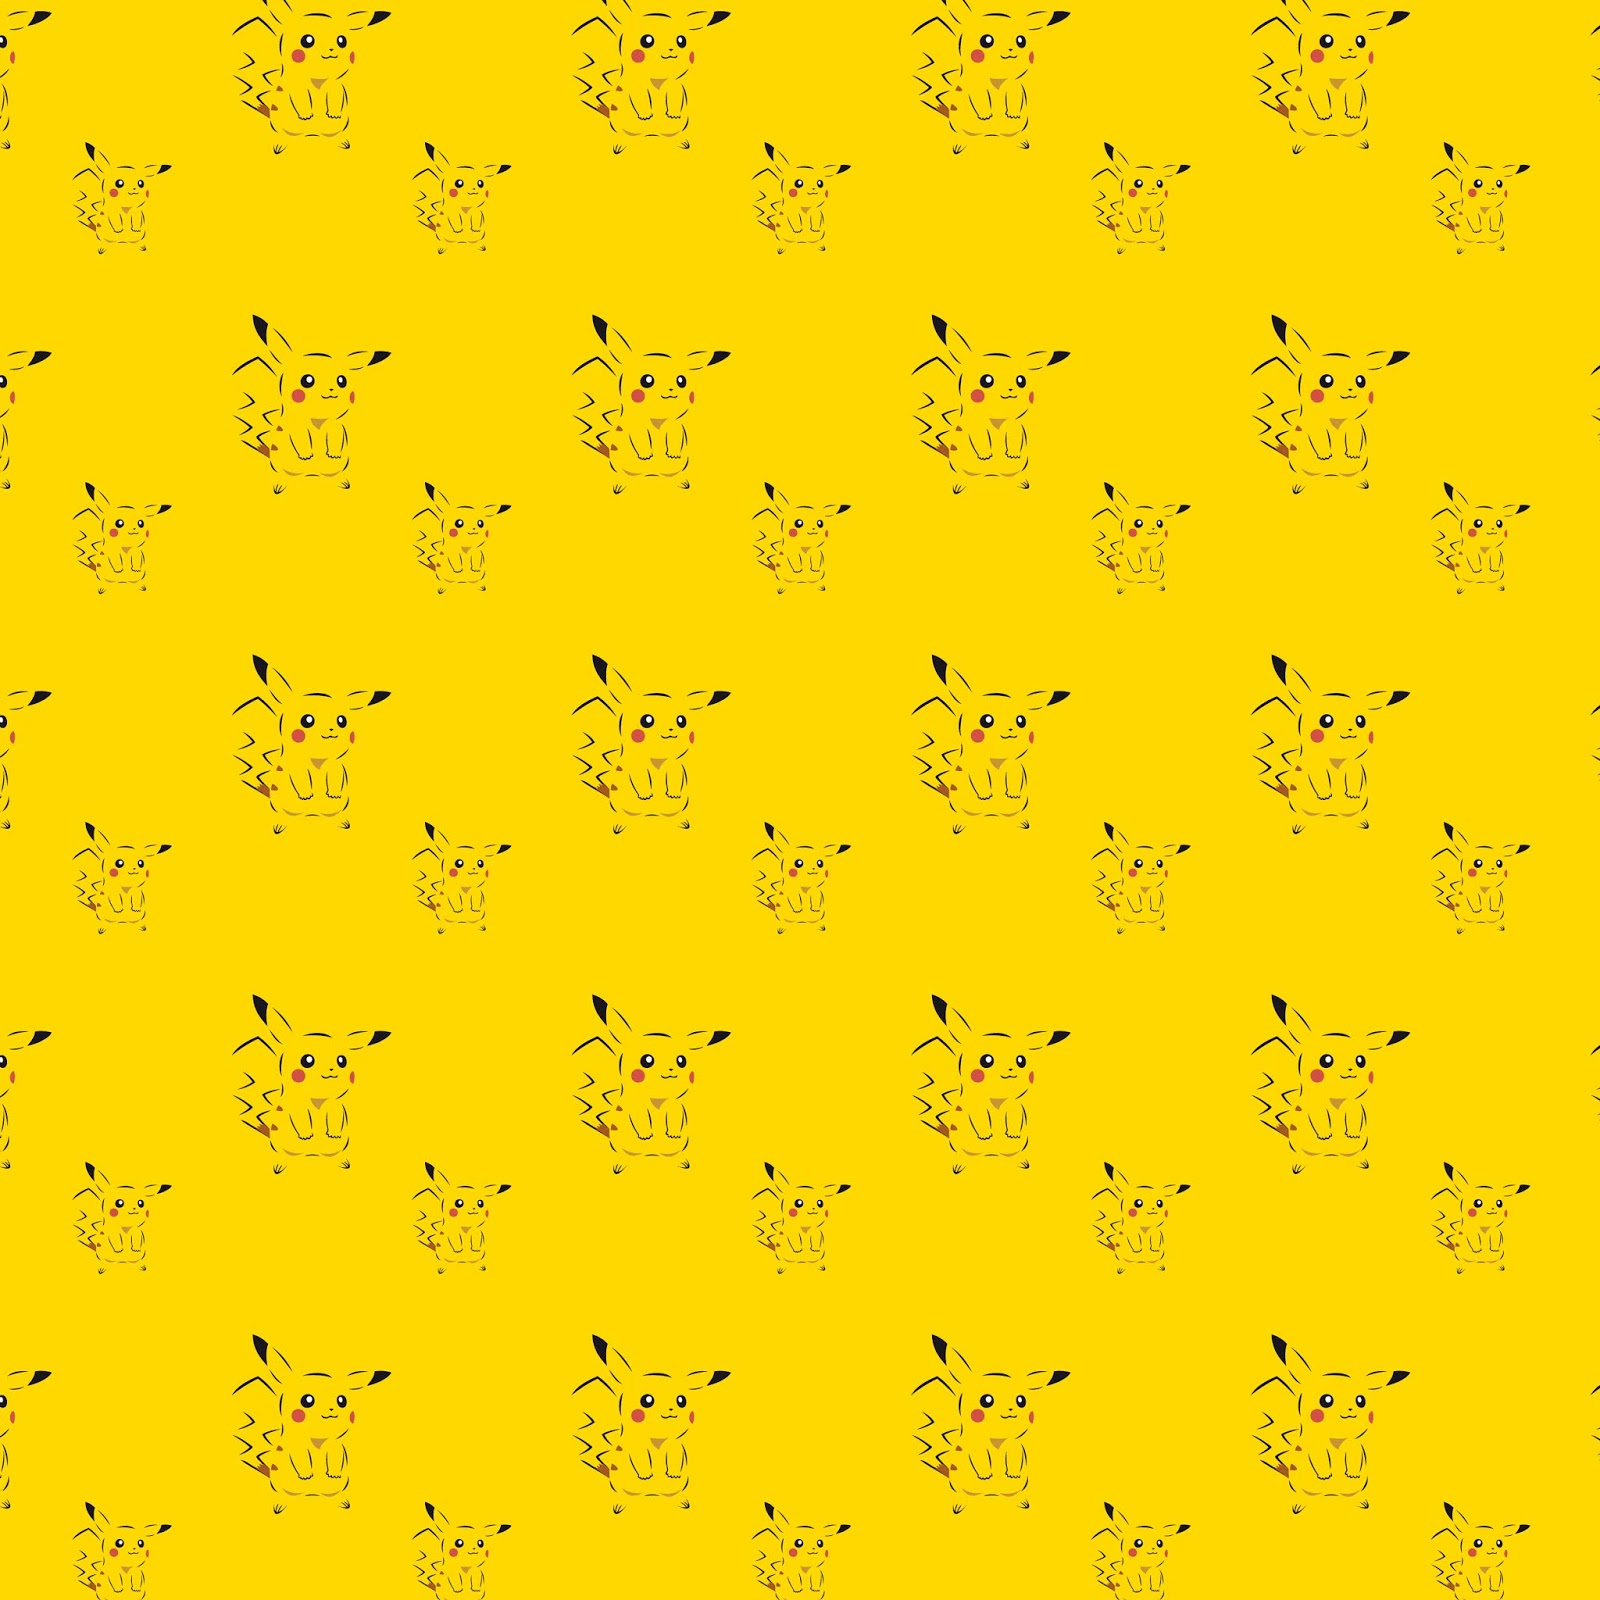 Kit Digital Pikachu Png Imágenes y Papeles Digitales